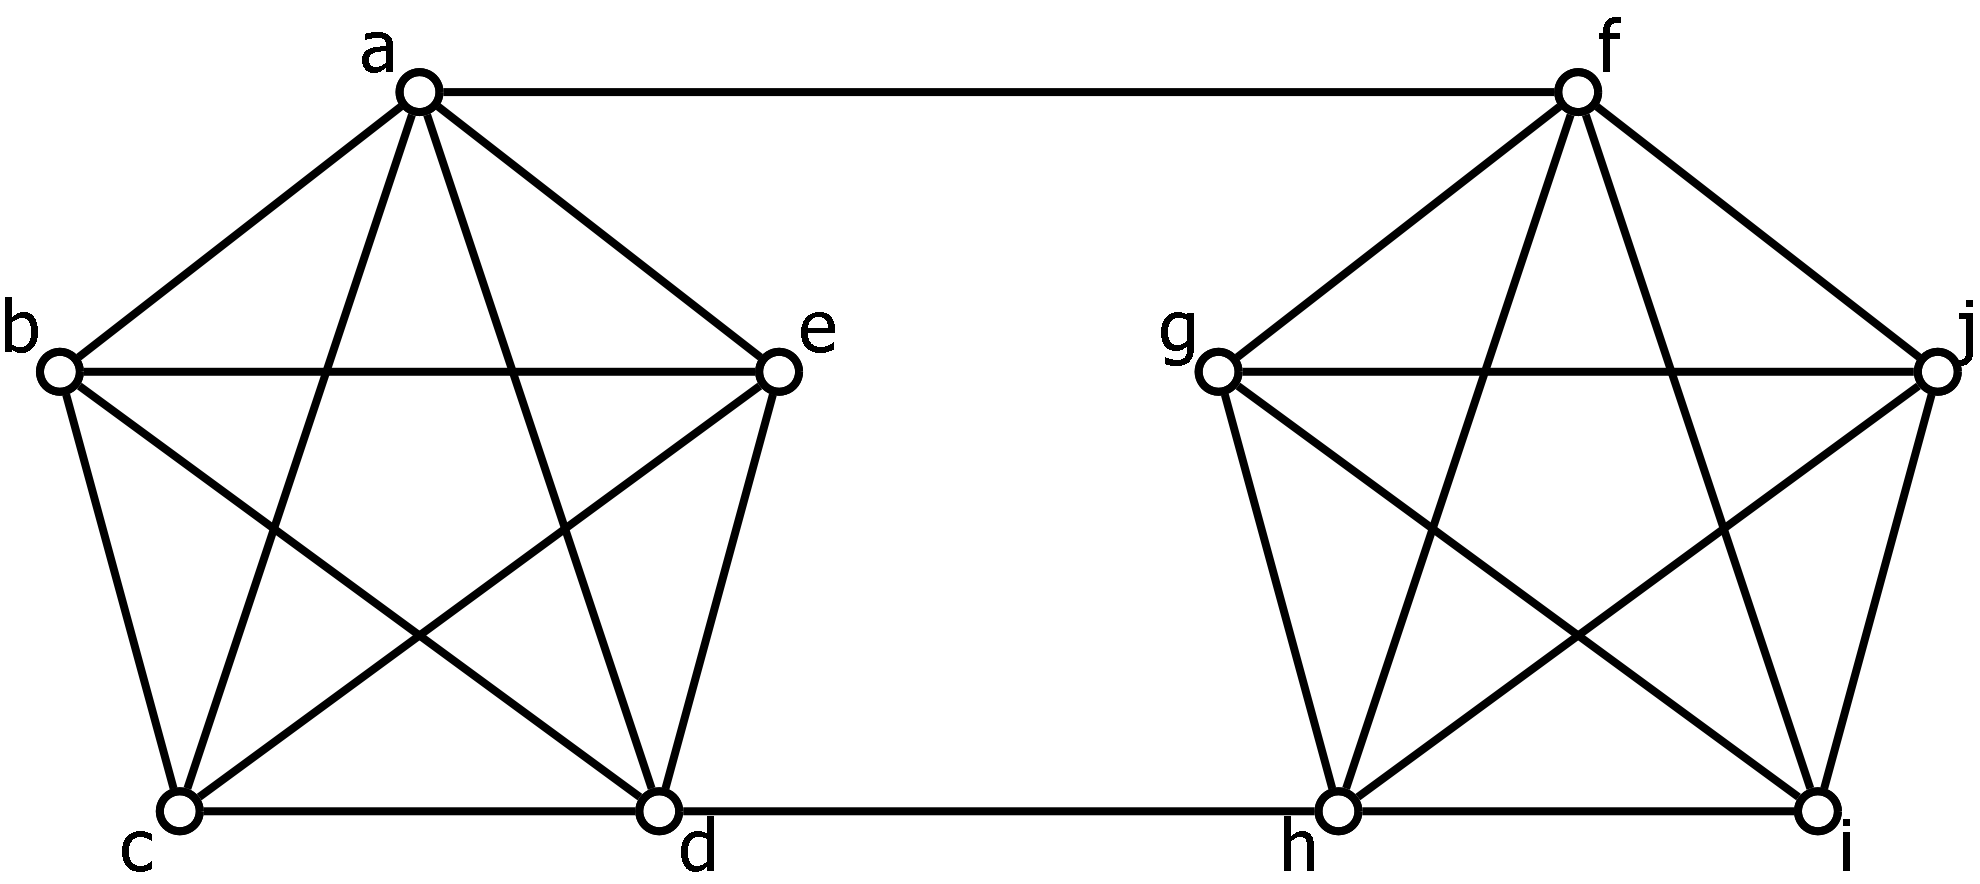 A ten vertex graph